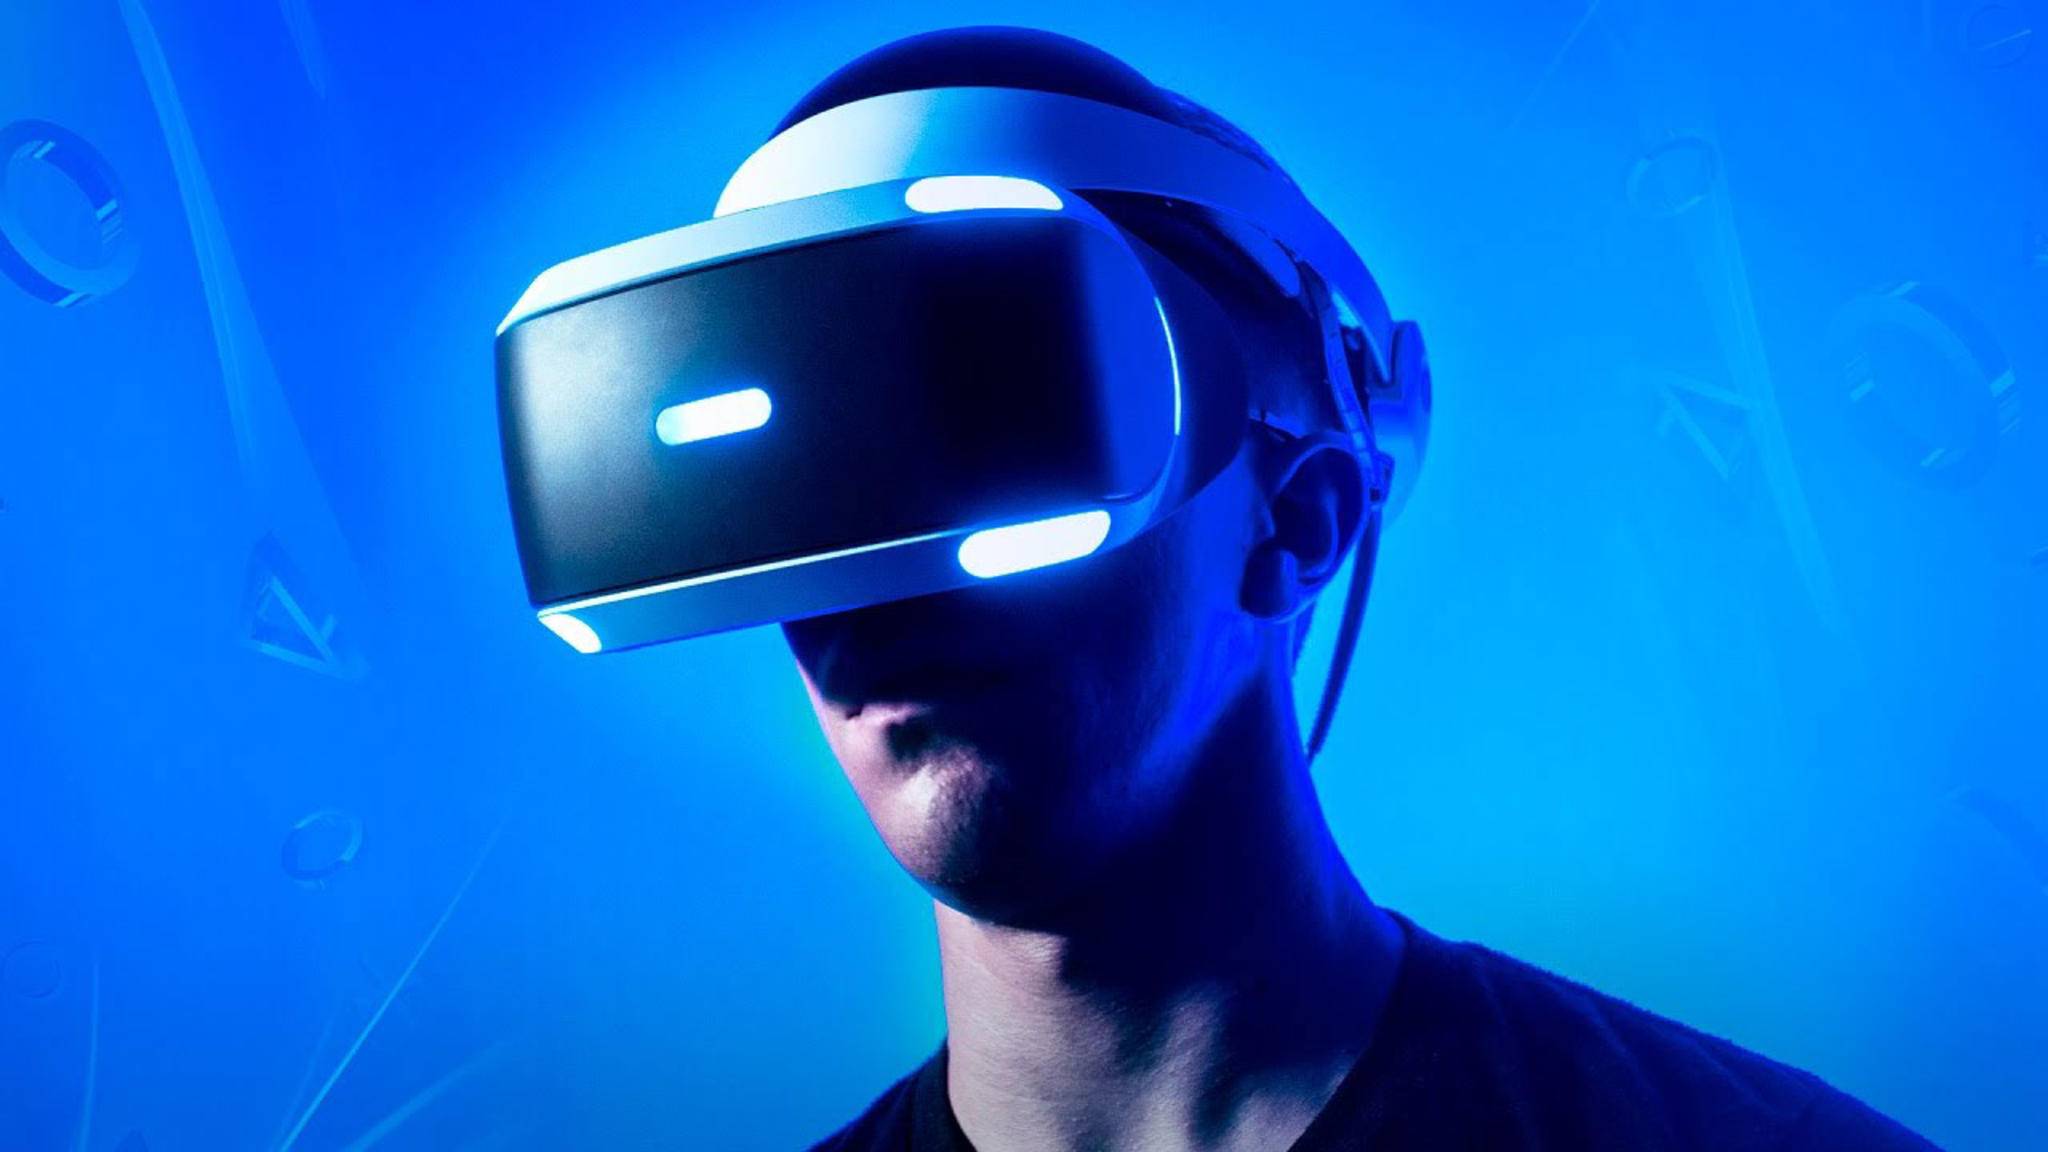 Hry pro Playstation 5 pravděpodobně nebudou podporovat VR